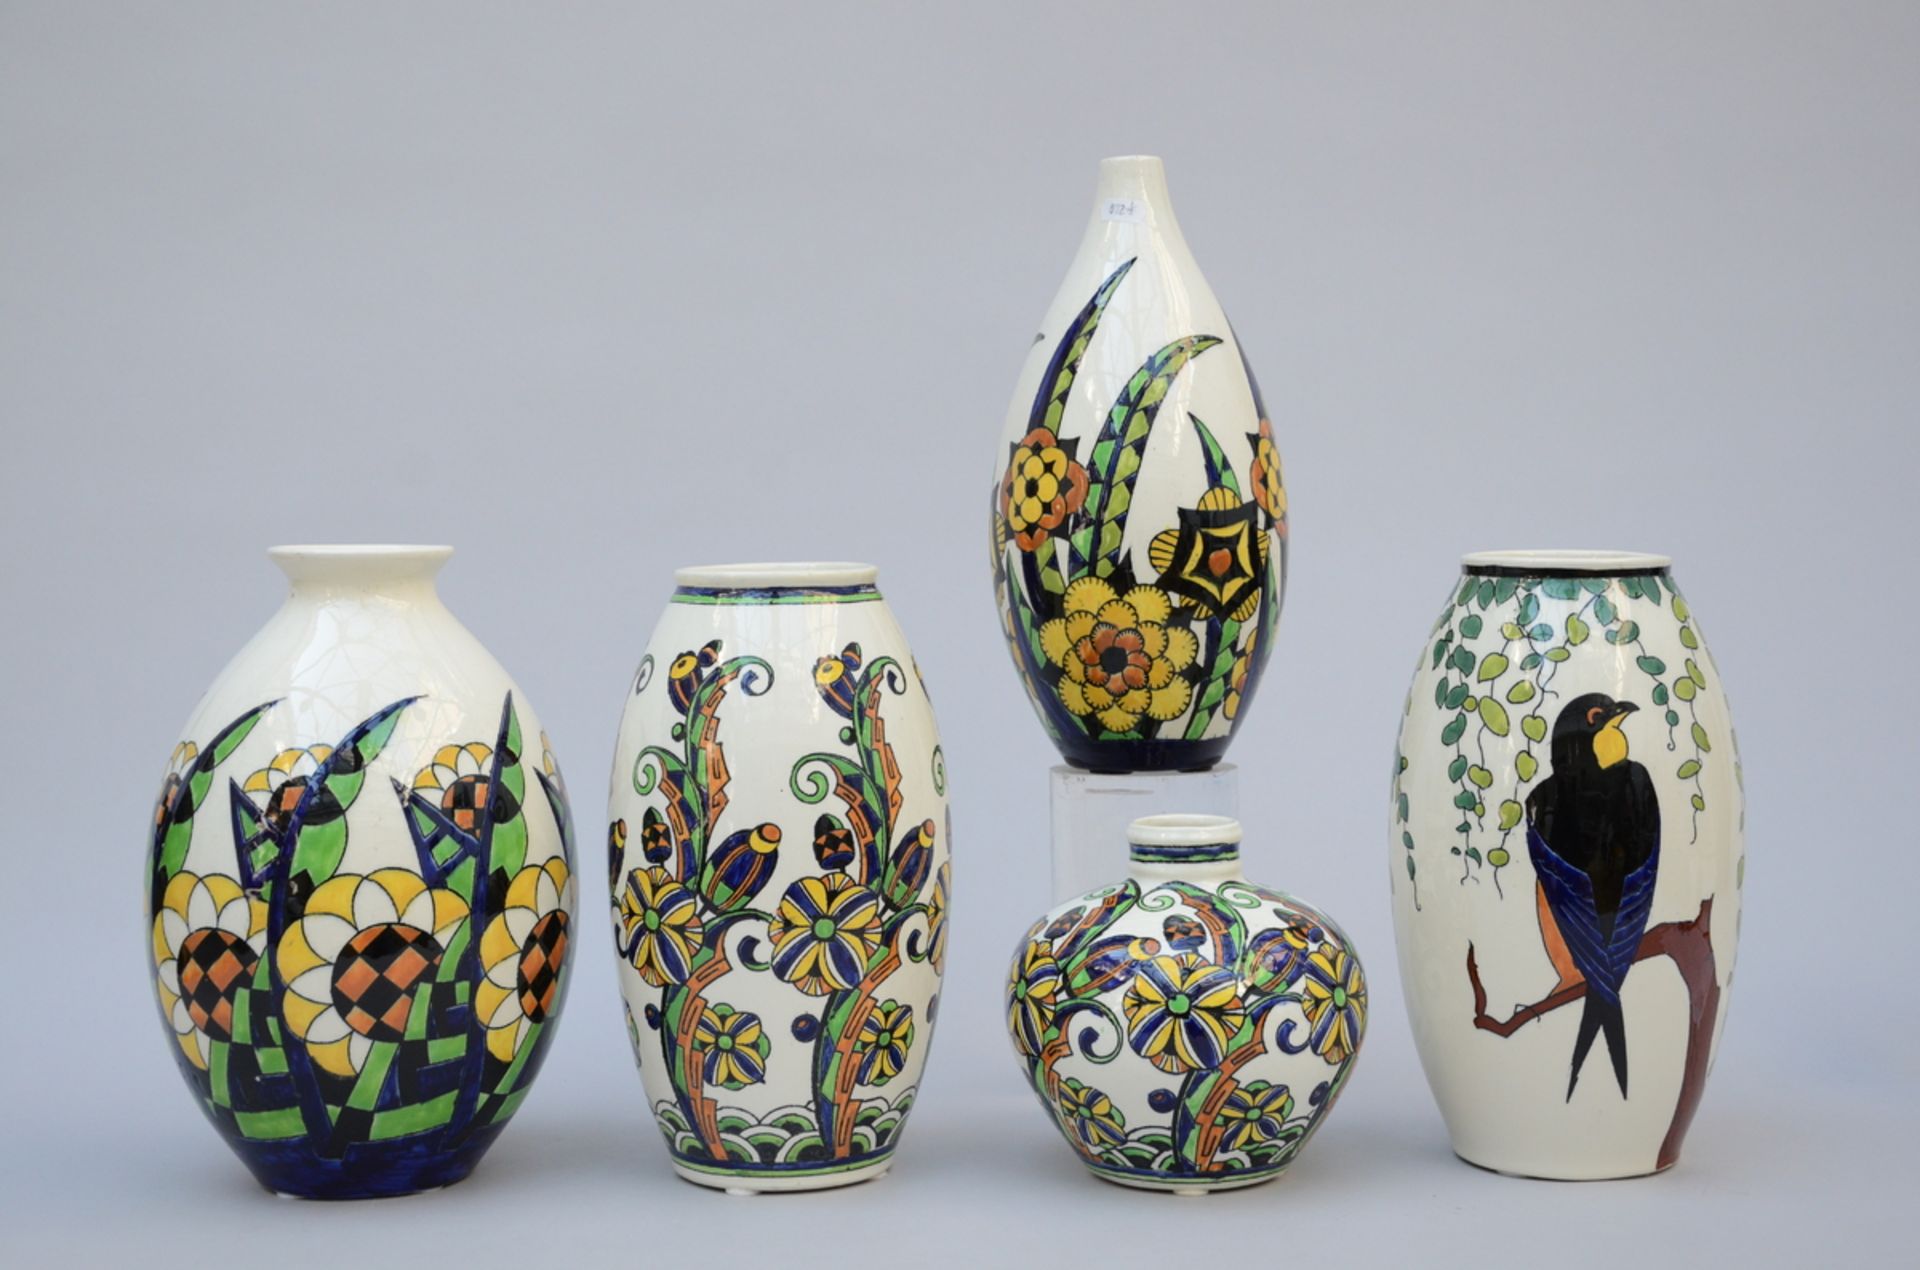 5 Art Deco vases Boch, D1081 D1263 D1430 D1346 (h14.5 to h32.5cm) - Image 2 of 3